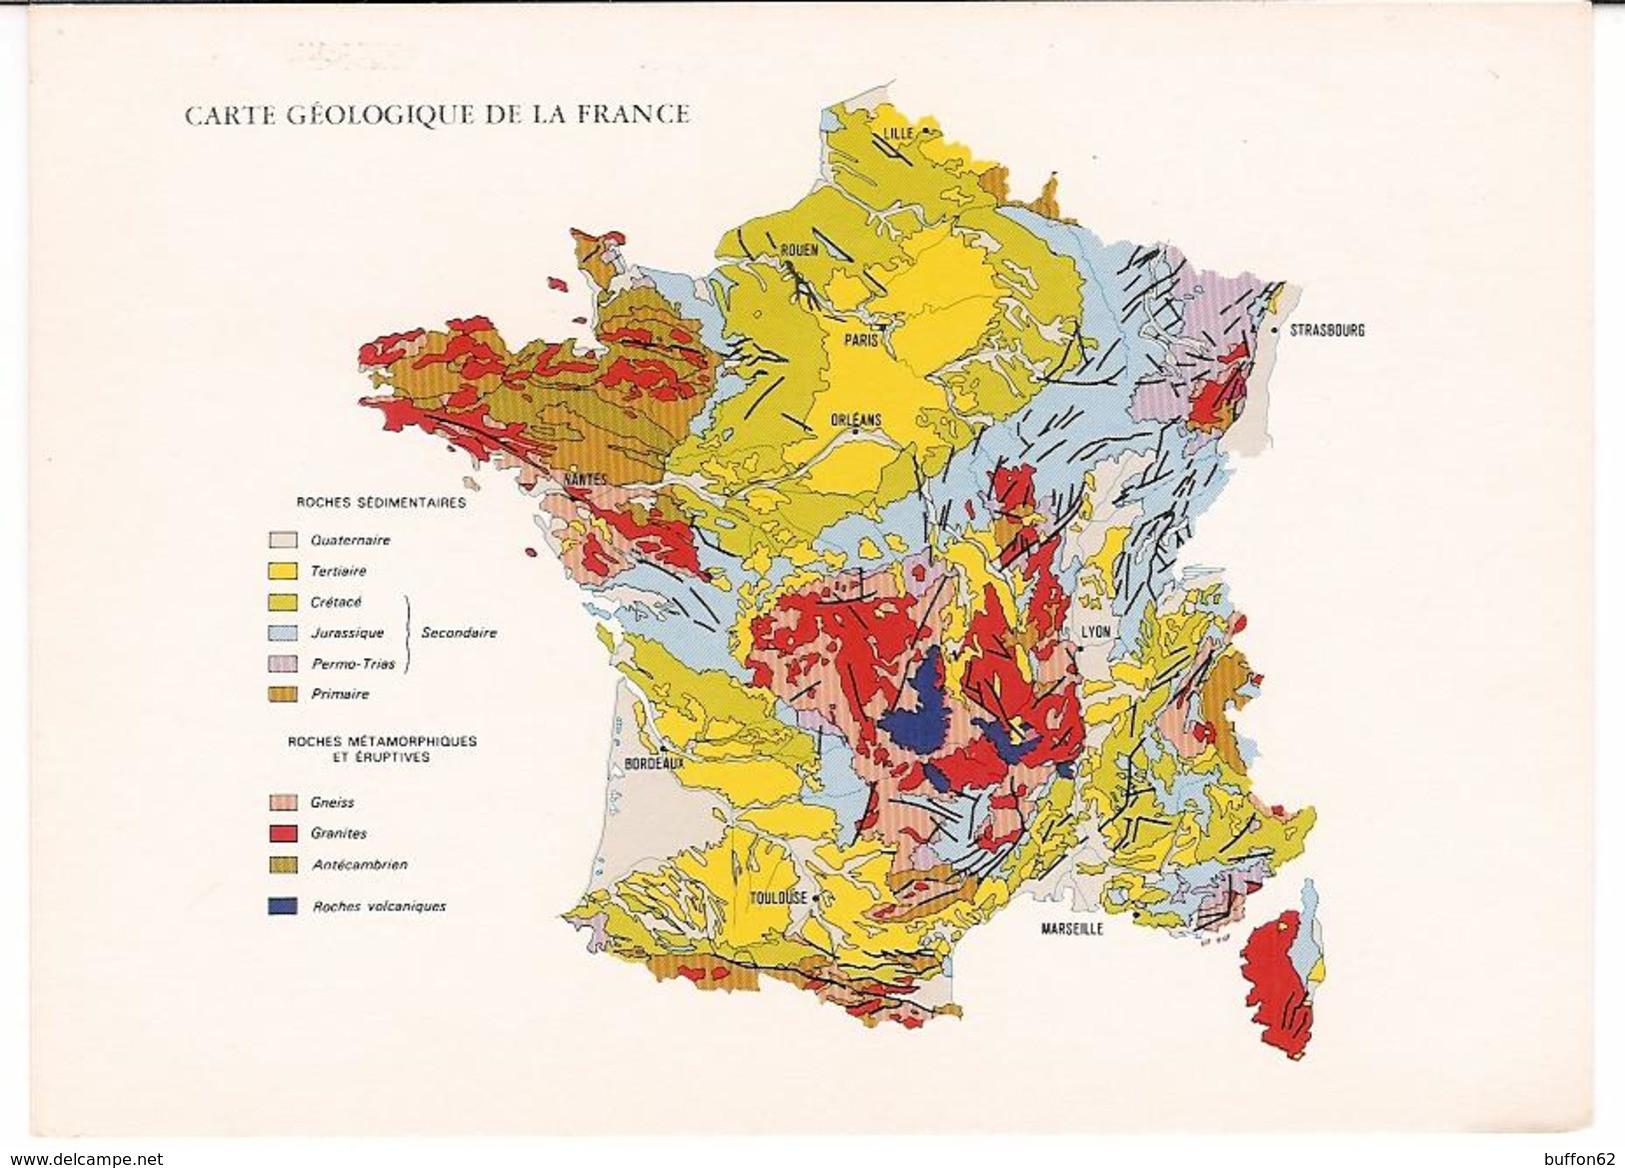 Carte Géologique De La France / Geological Map Of France. BRGM / Geological Survey. Scale 1/1,000,000. - Landkarten